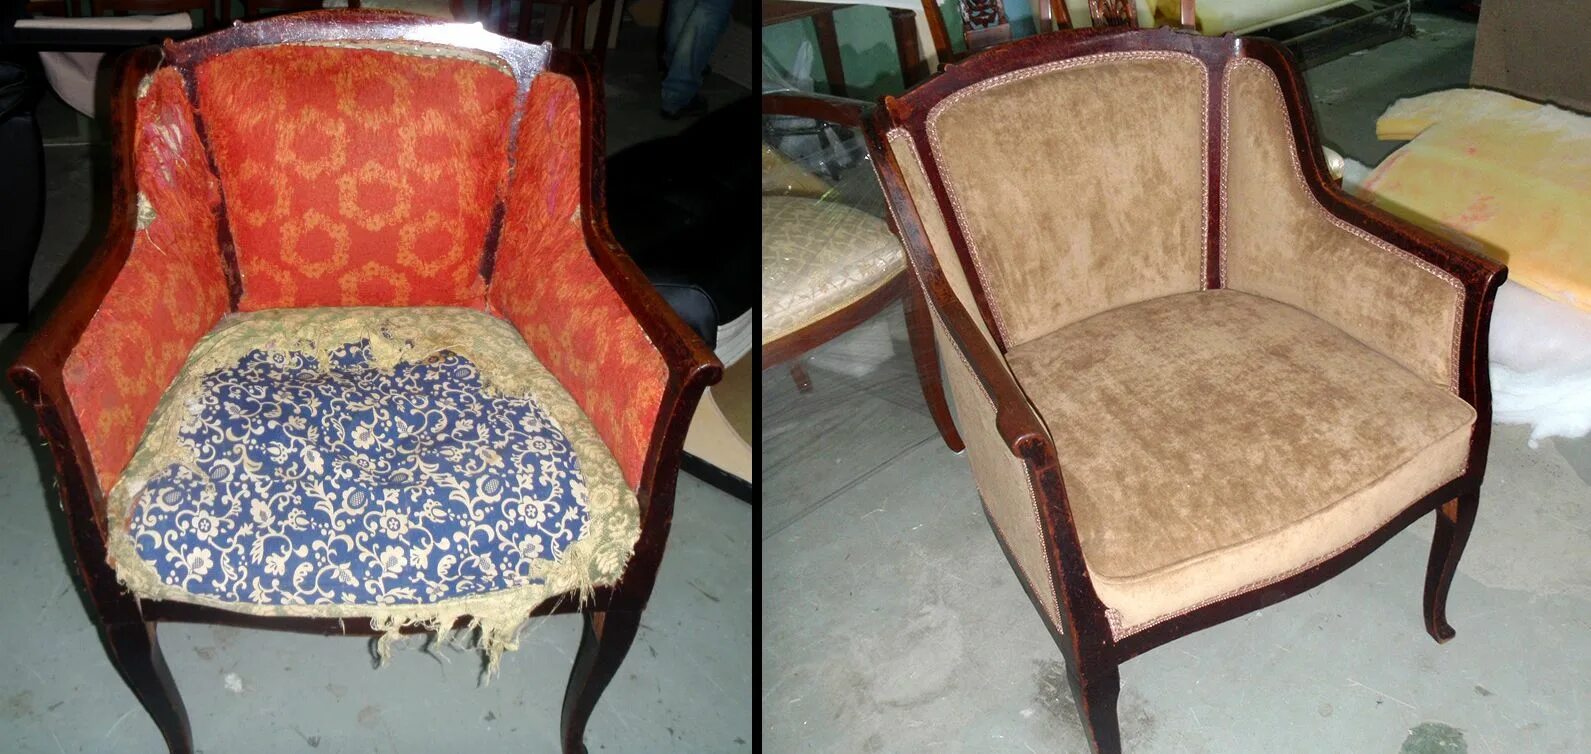 Обивка старой мебели. Перетянут старое ь кресло. Старые мягкие кресла. Перетяжка старого кресла. Ремонт реставрация мебели